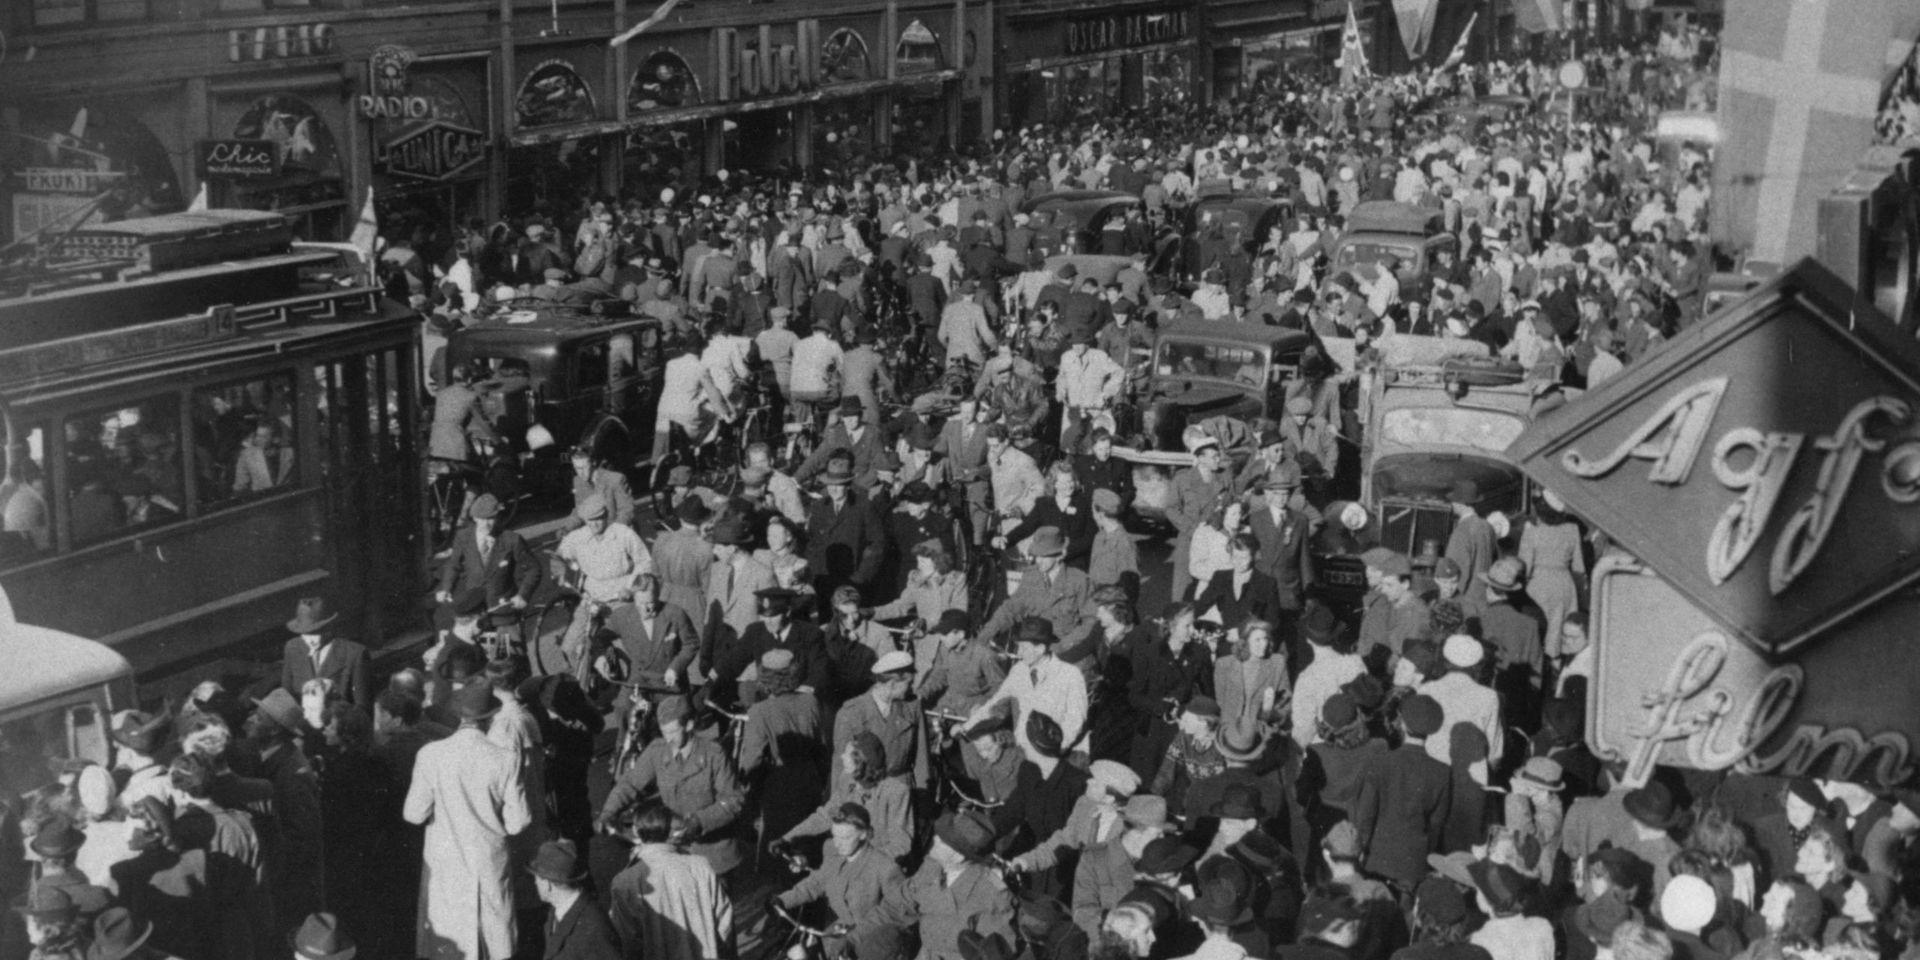 Fredsdagen 1945 på Kungsgatan i Stockholm. 
Jublande folkmassor på gatan. Sett ovanifrån.
Spårvagn försöker forcera folkmassan.
